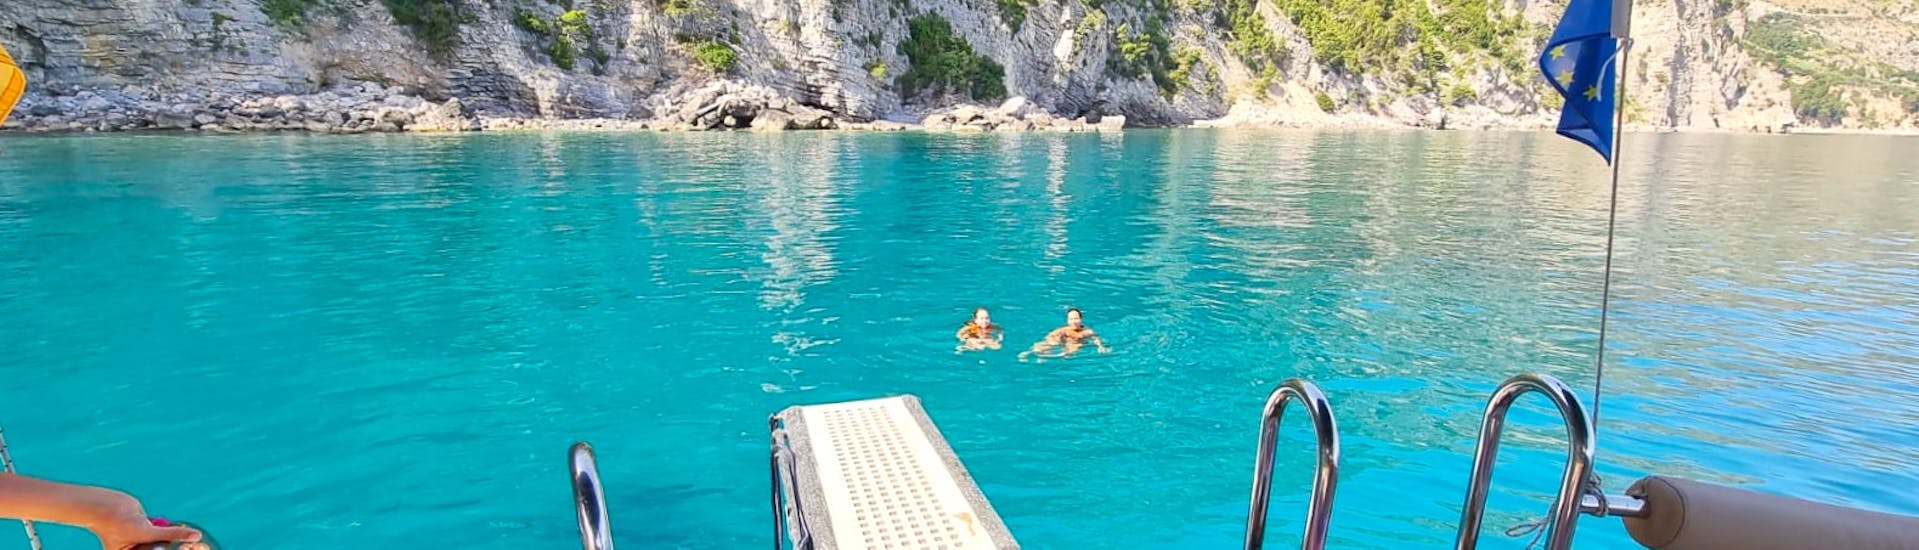 Foto di due partecipanti nel mare durante la Gita in barca a Capri e alla Grotta Azzurra da Sorrento con snorkeling con MBS Blu Charter Sorrento.